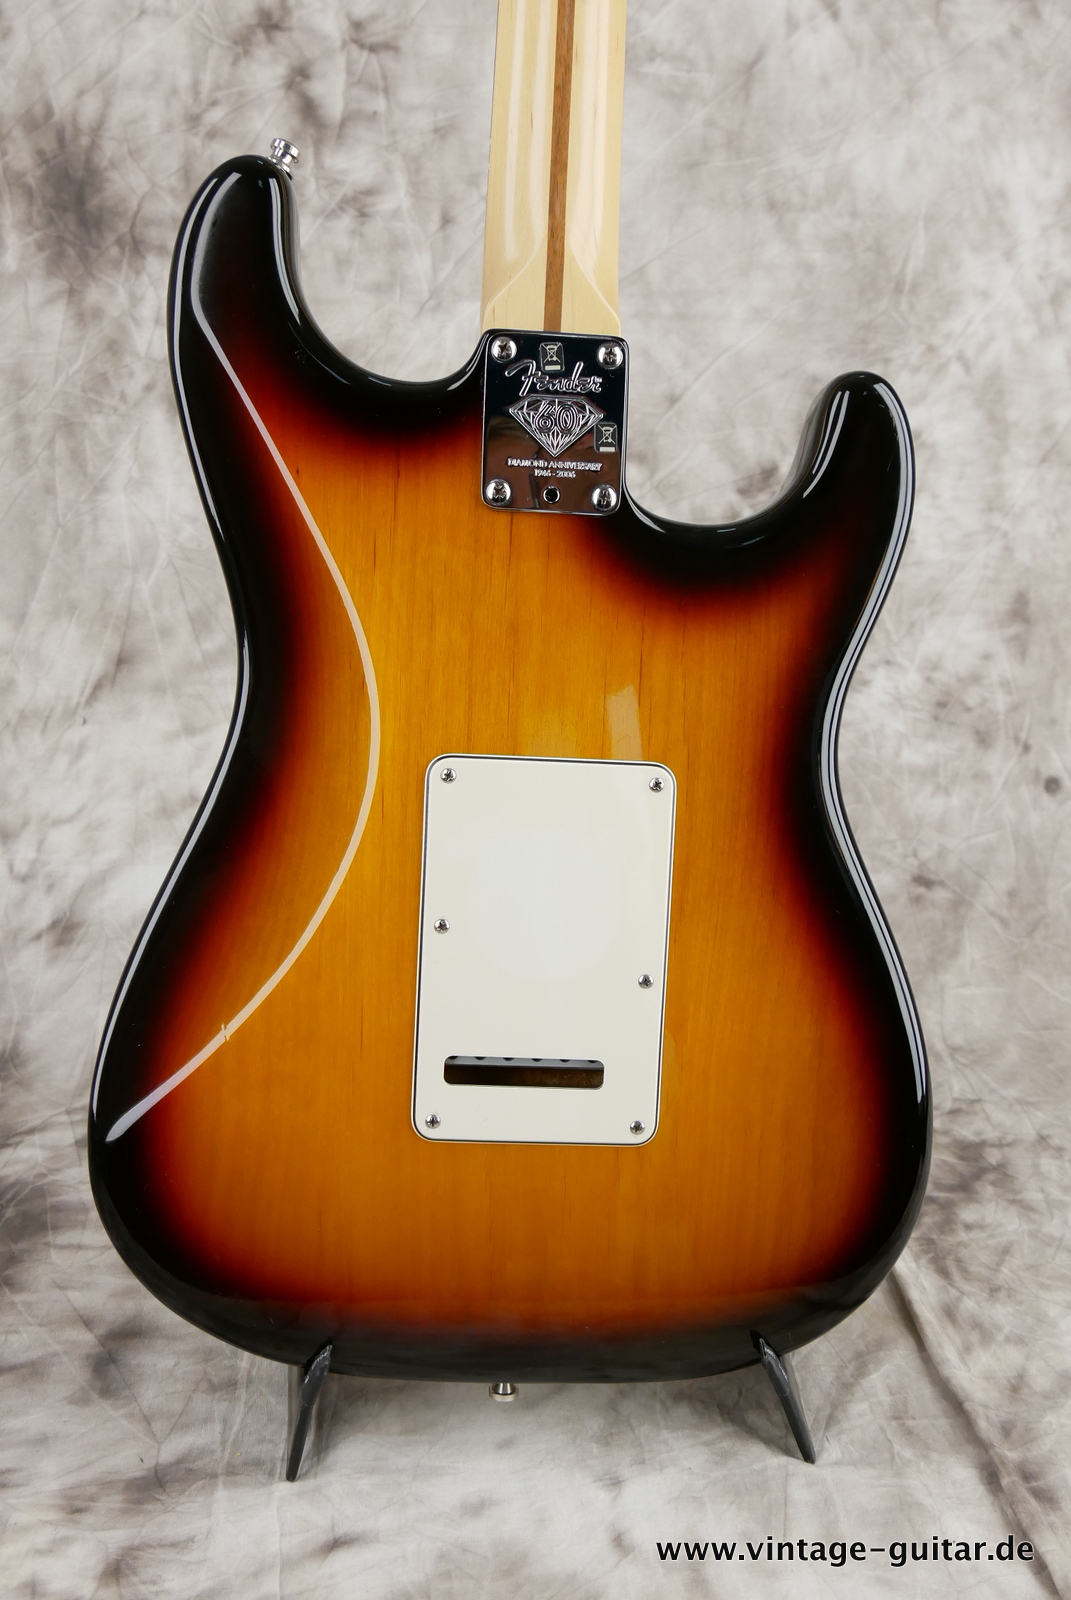 Fender_Stratocaster_American_Series_Diamond_Anniversary_60th_Left_handed_USA_sunburst-008.JPG